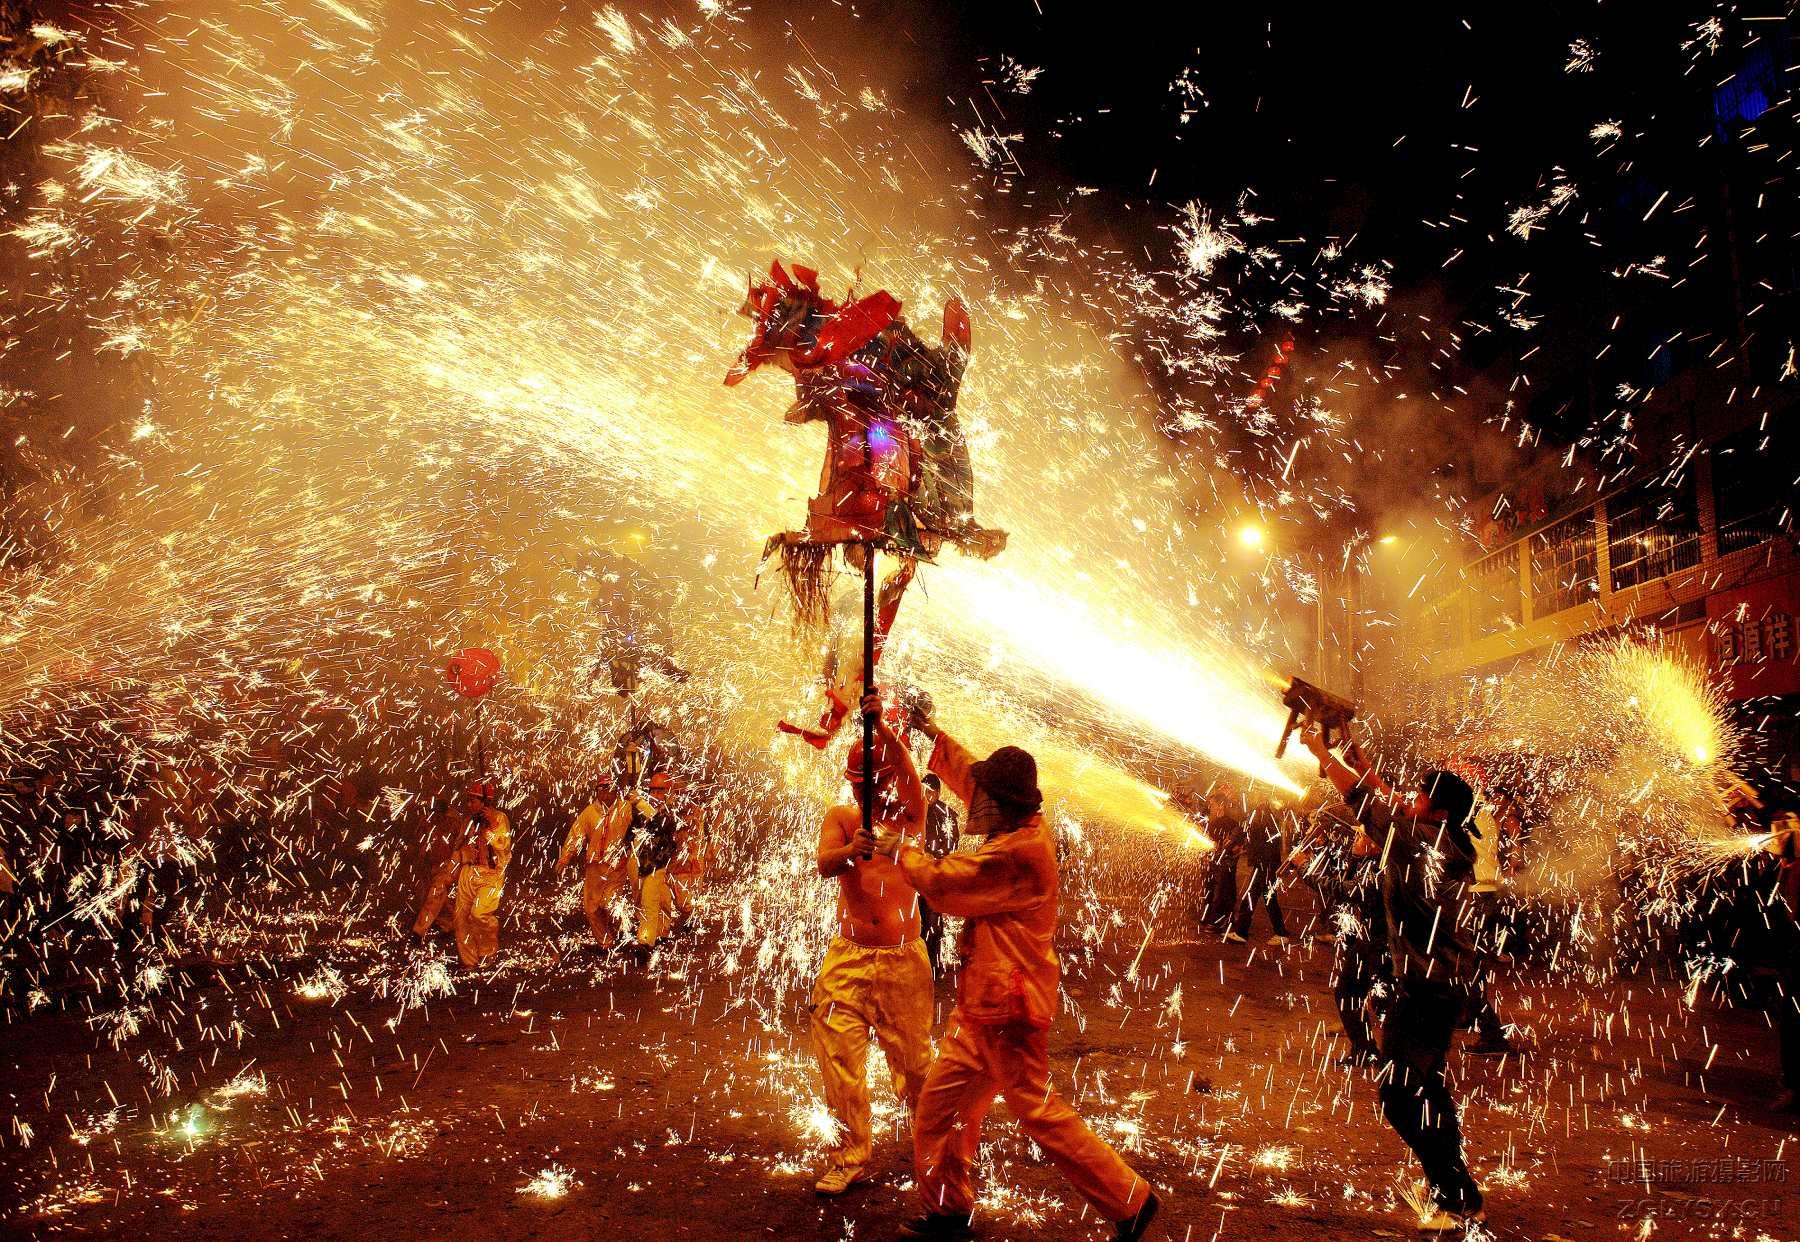 2009年2月9日贵州省台江县城举行了舞火龙闹元宵活动，火龙在嘘花喷射中舞动。数万人观看了这一惊险、刺激、 ...